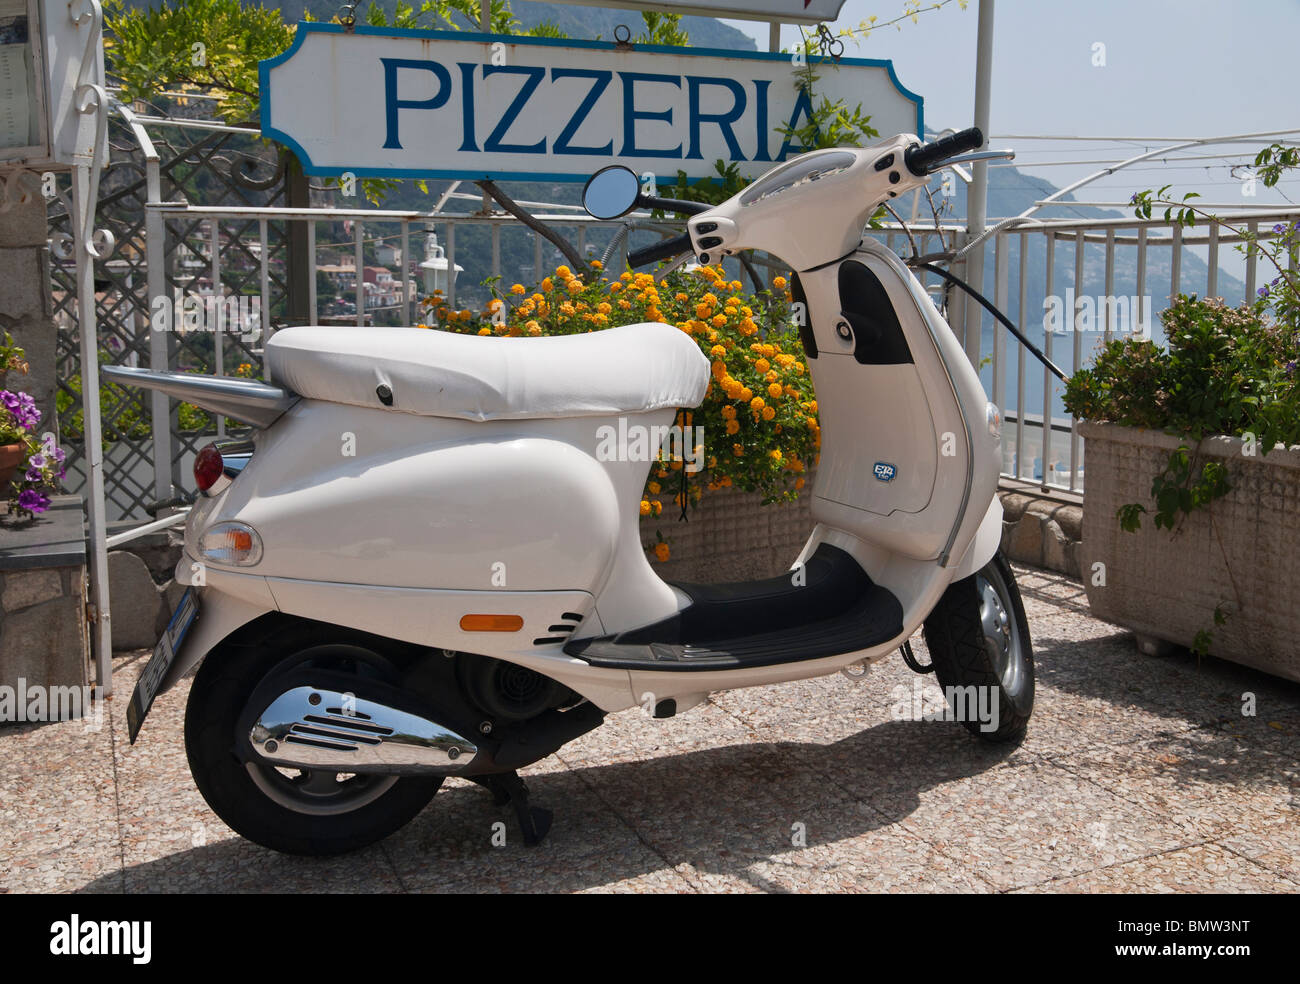 Pizzeria sign and a Piaggio Vespa ET4 150 in Positano on the Amalfi Coast, Italy Stock Photo